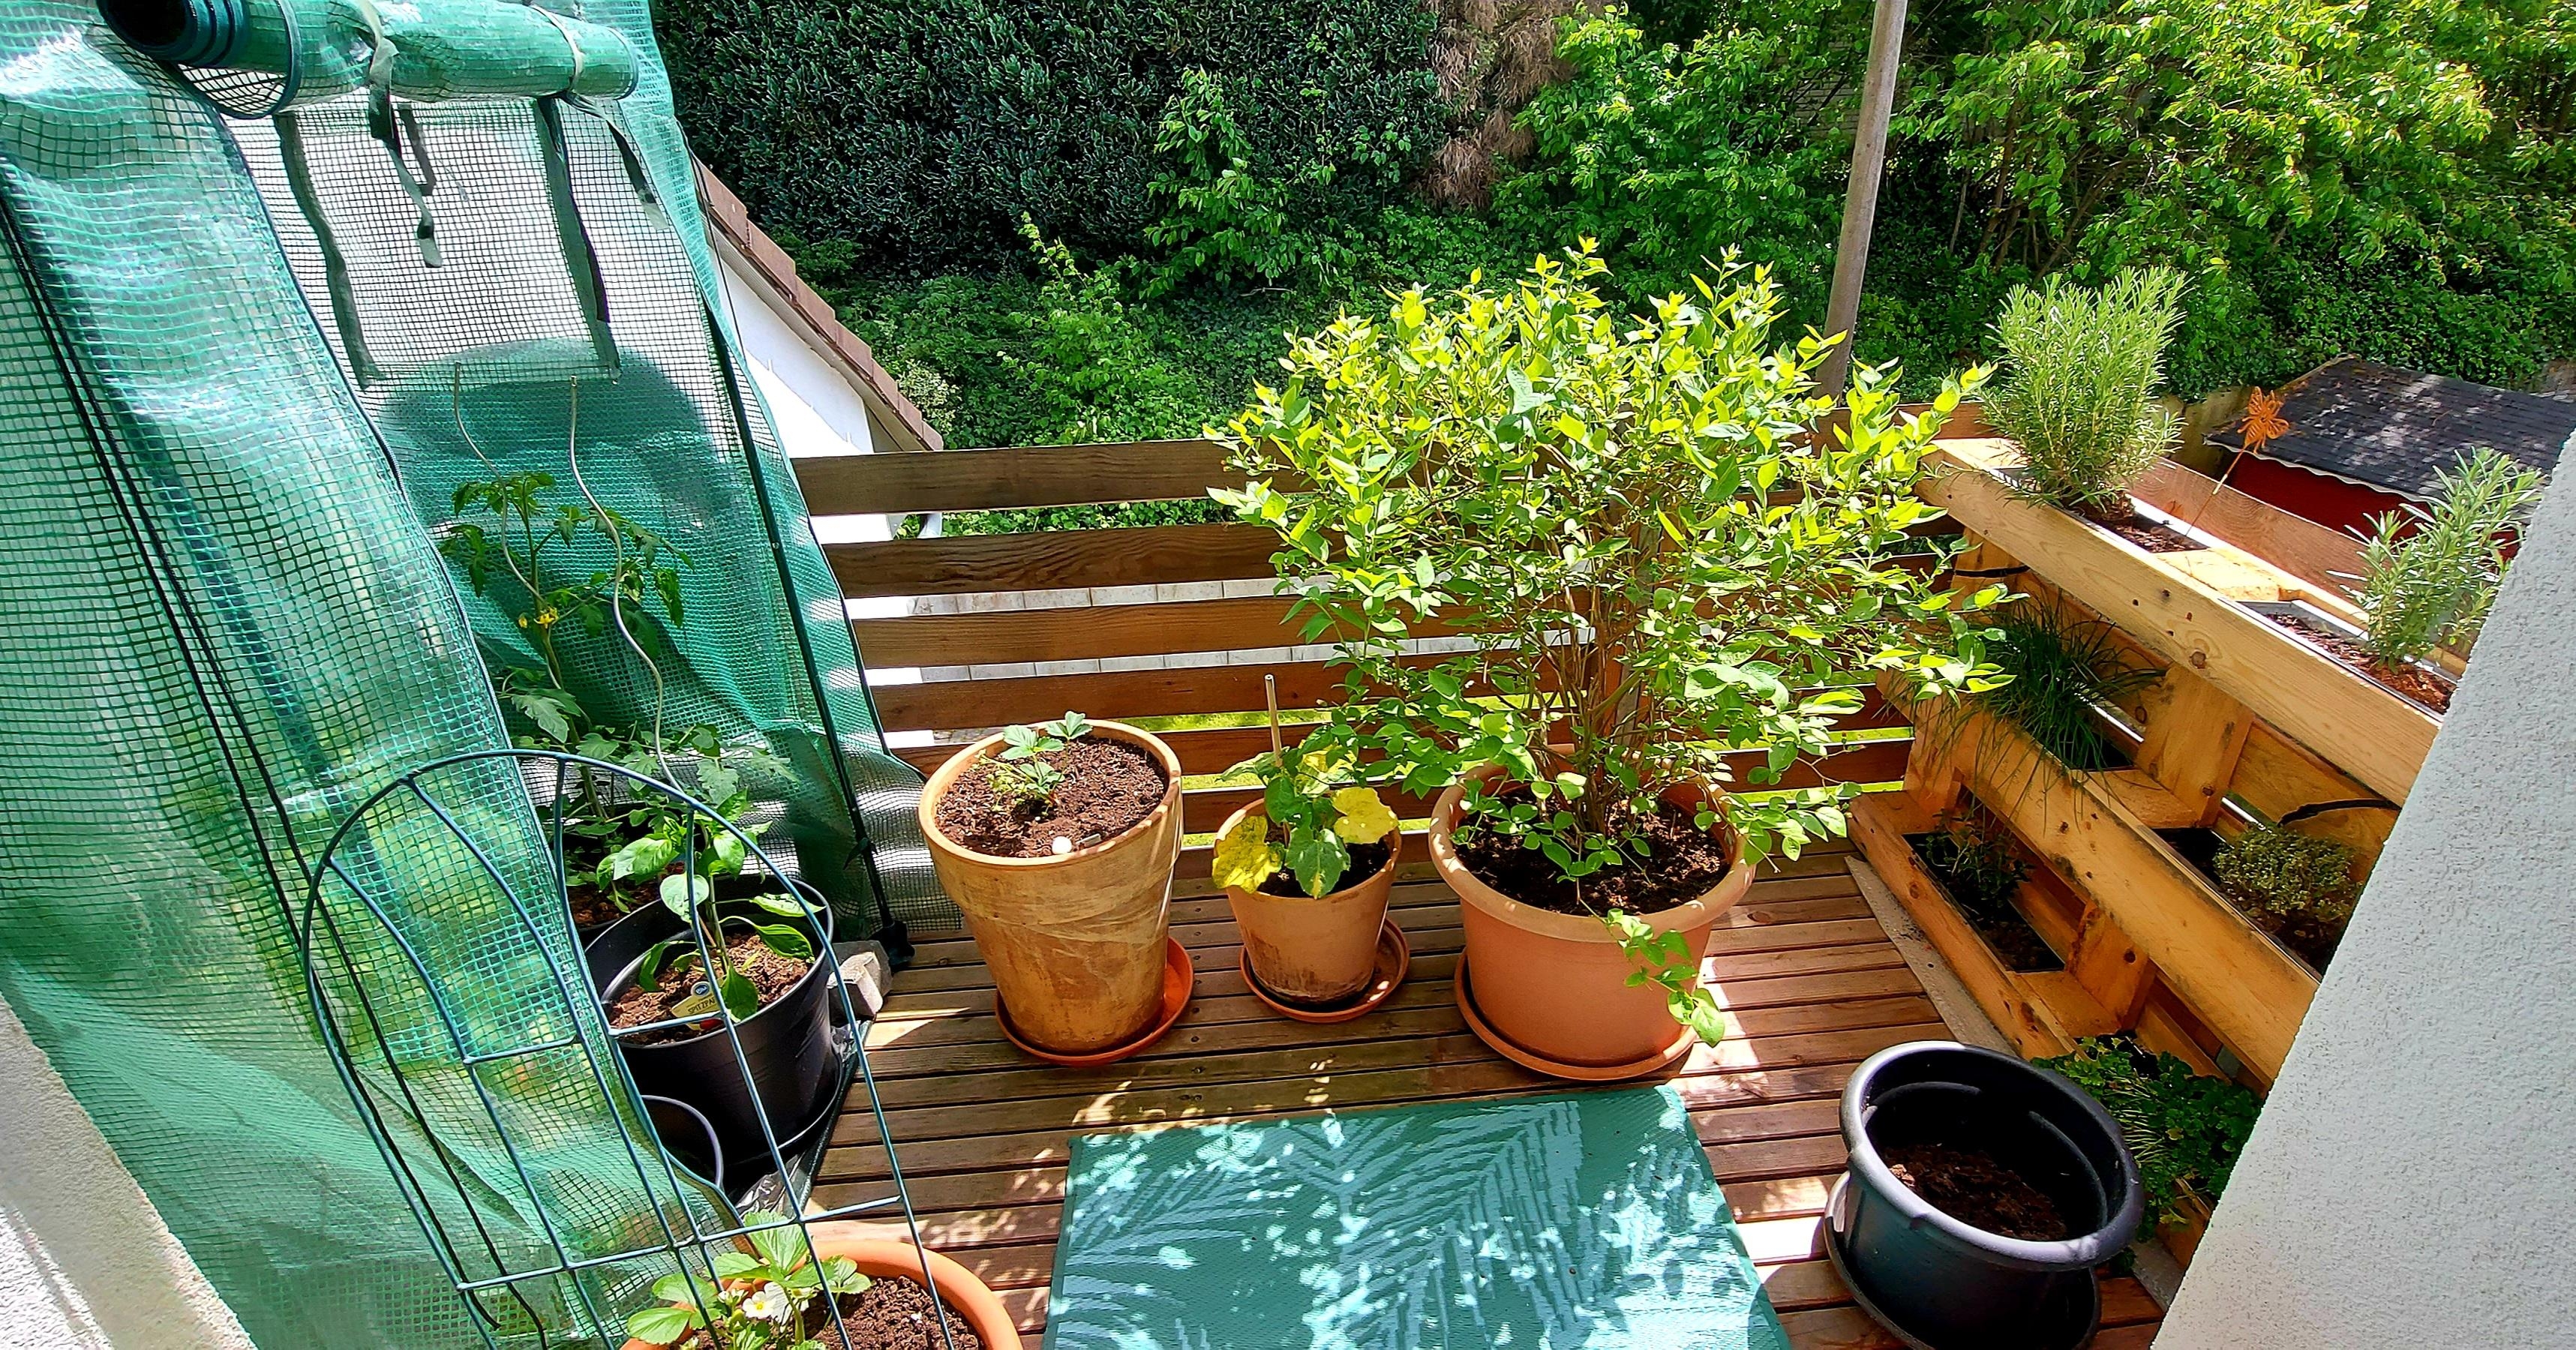 Urban Gardening auf einem unserer Balkone

#kleinerBalkon
#Gemuese #palettenbeet #Kräuter #grünerleben